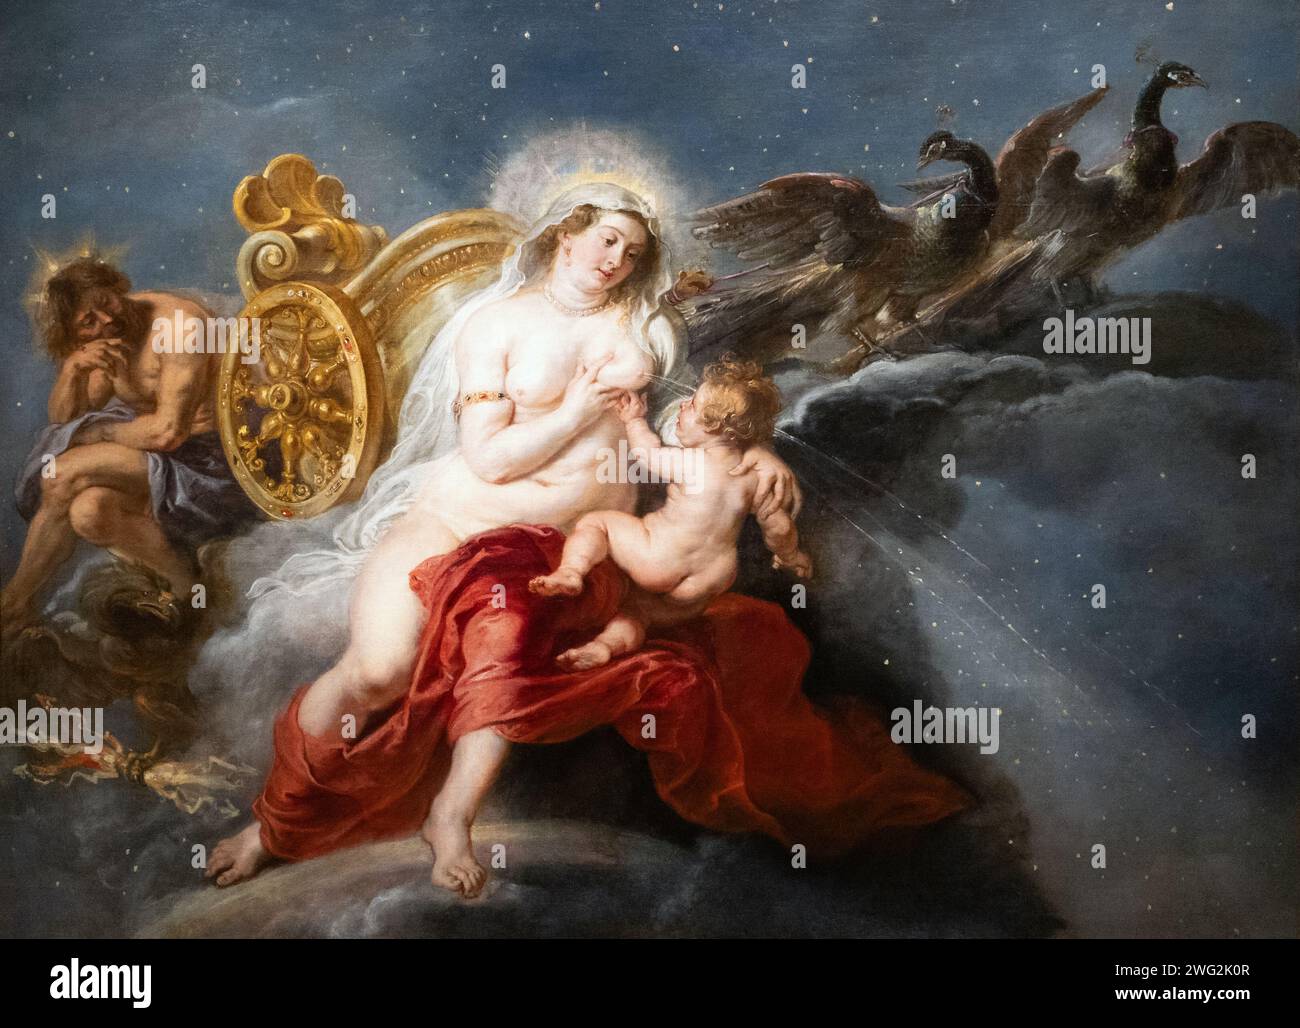 Pittura di Rubens; "la nascita della via Lattea", 1636-8, olio su tela. Dio Giove, la dea Giunone e il bambino Ercole. dipinti mitologici del 1600. Foto Stock